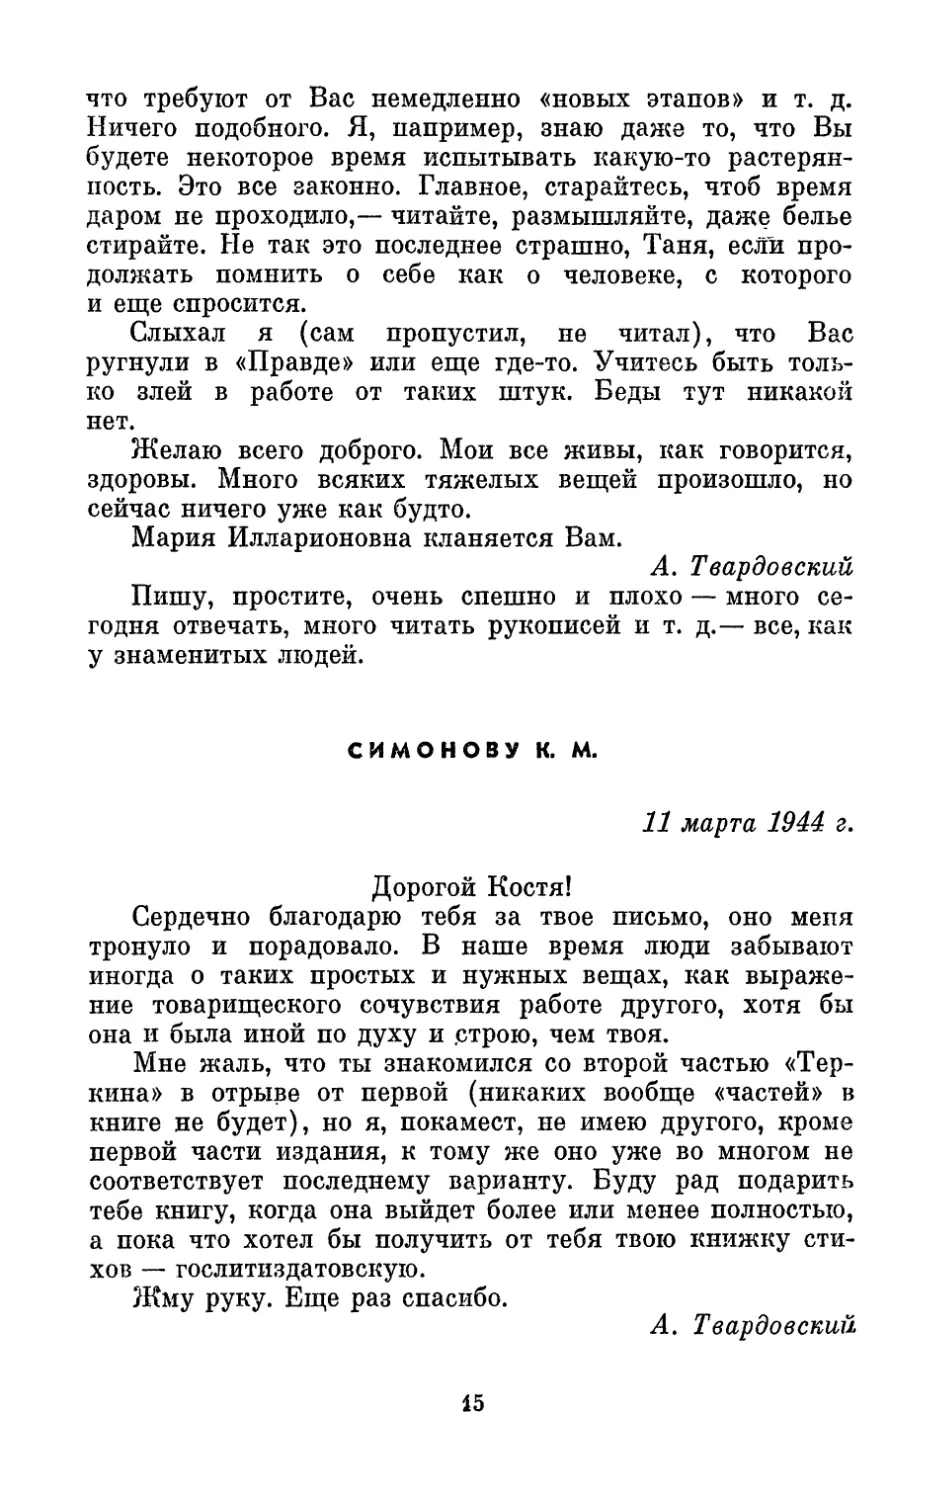 Симонову К. М., 11 марта 1944 г.